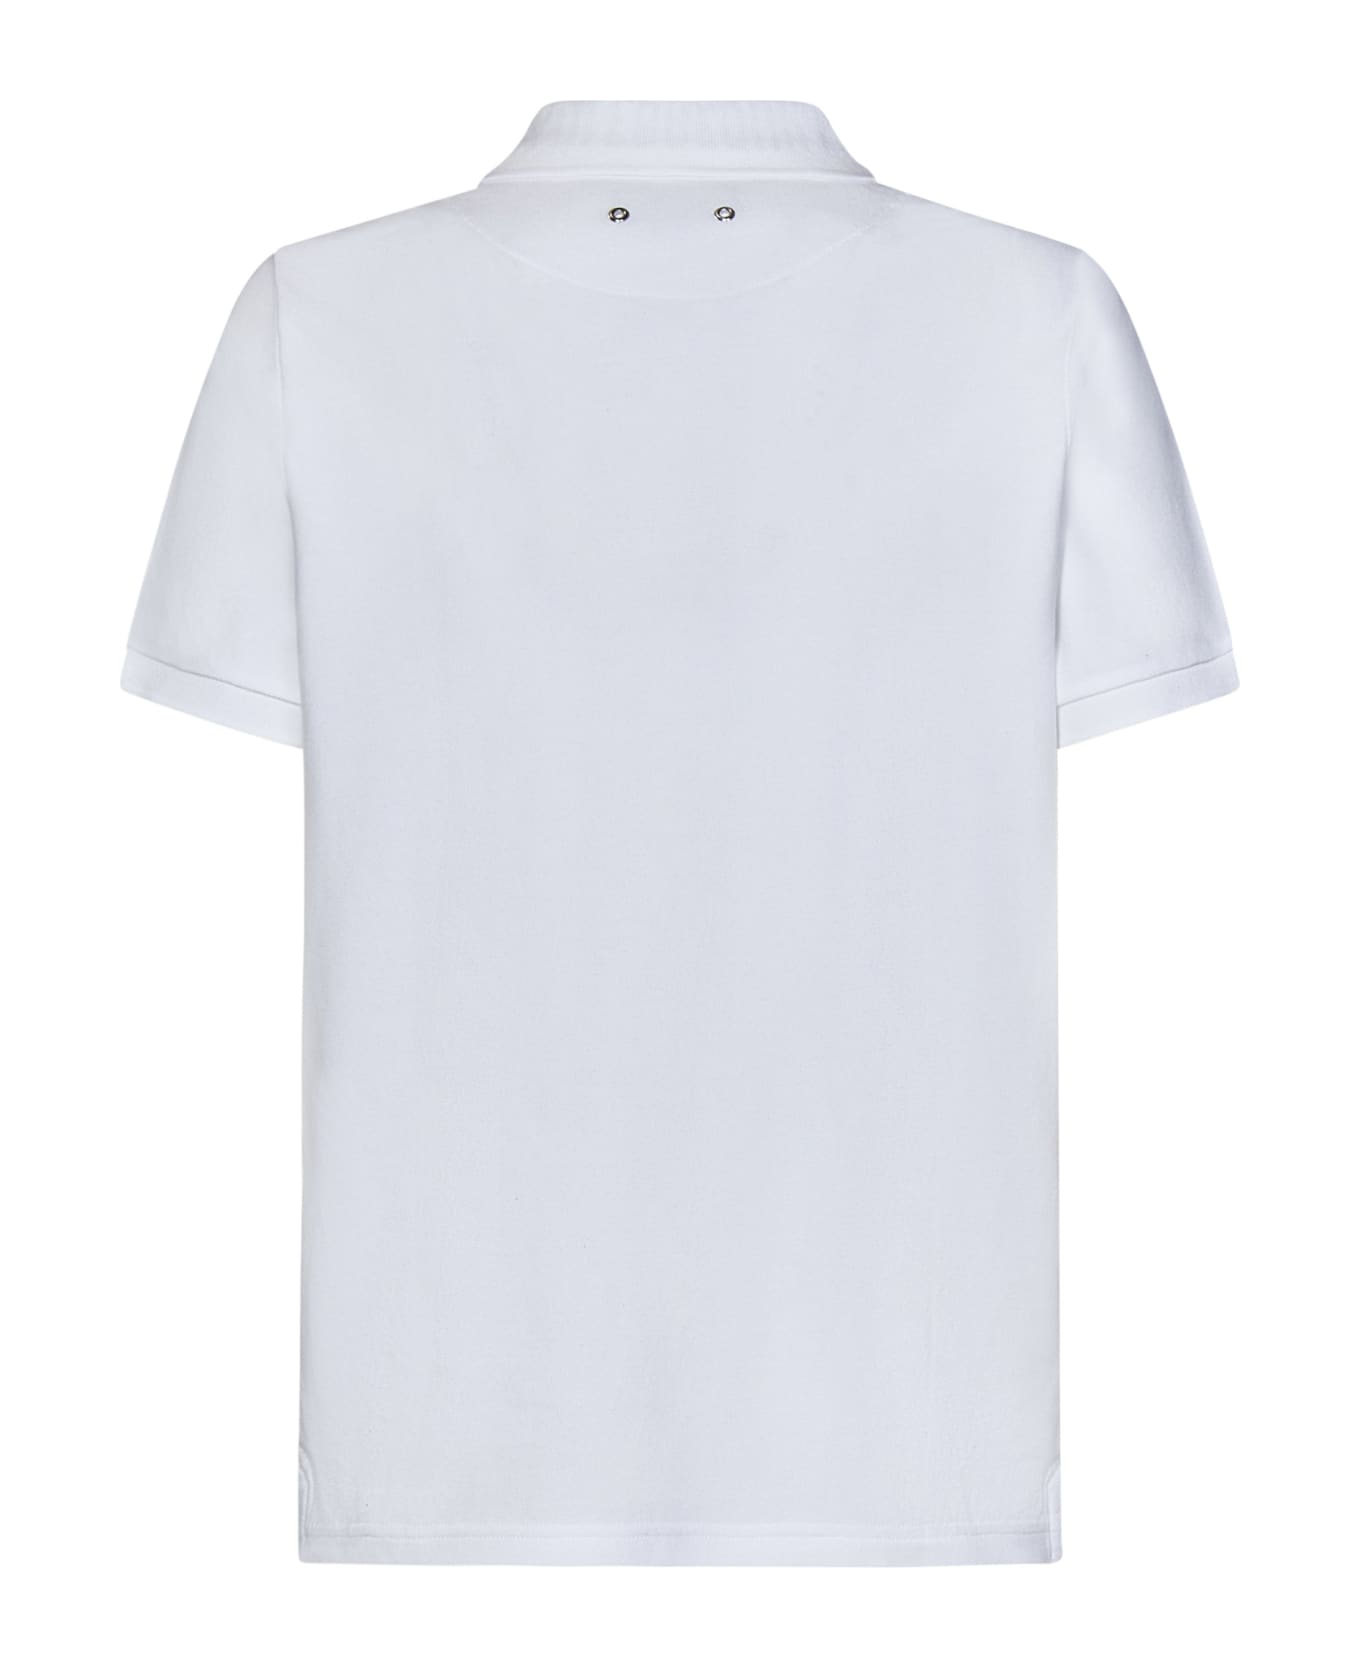 Vilebrequin Palatin Polo Shirt - White